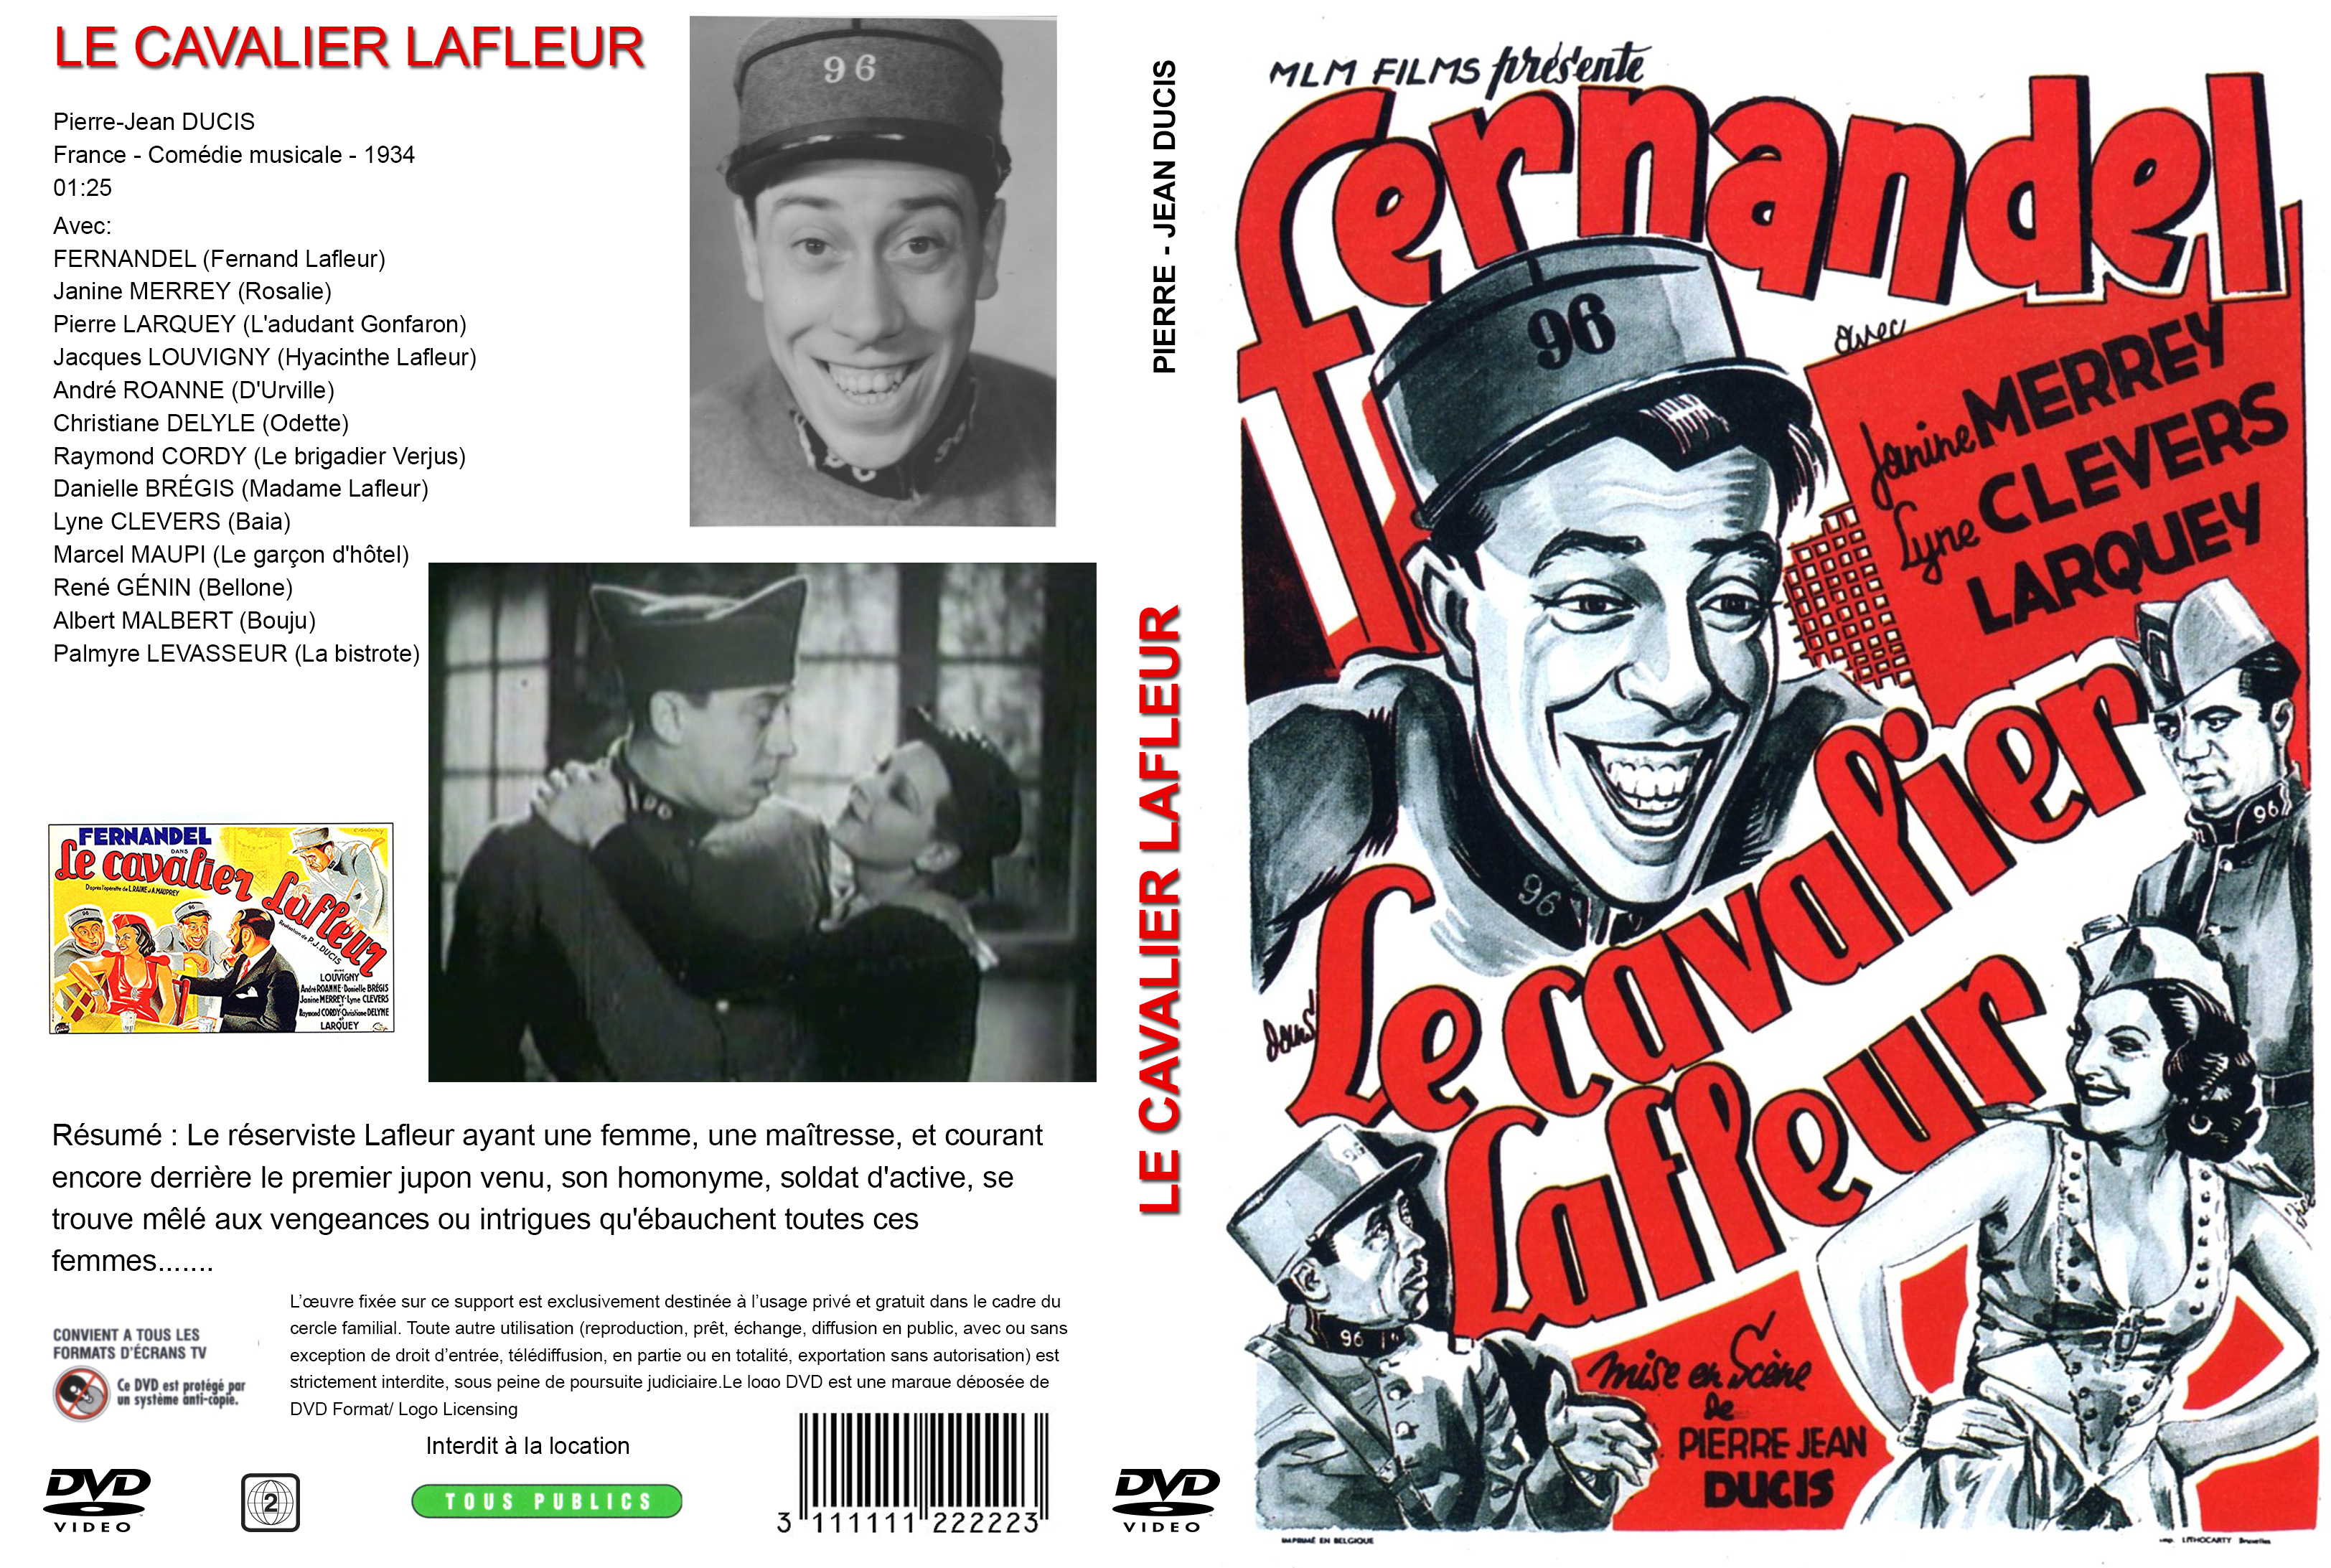 Jaquette DVD Le Cavalier Lafleur custom